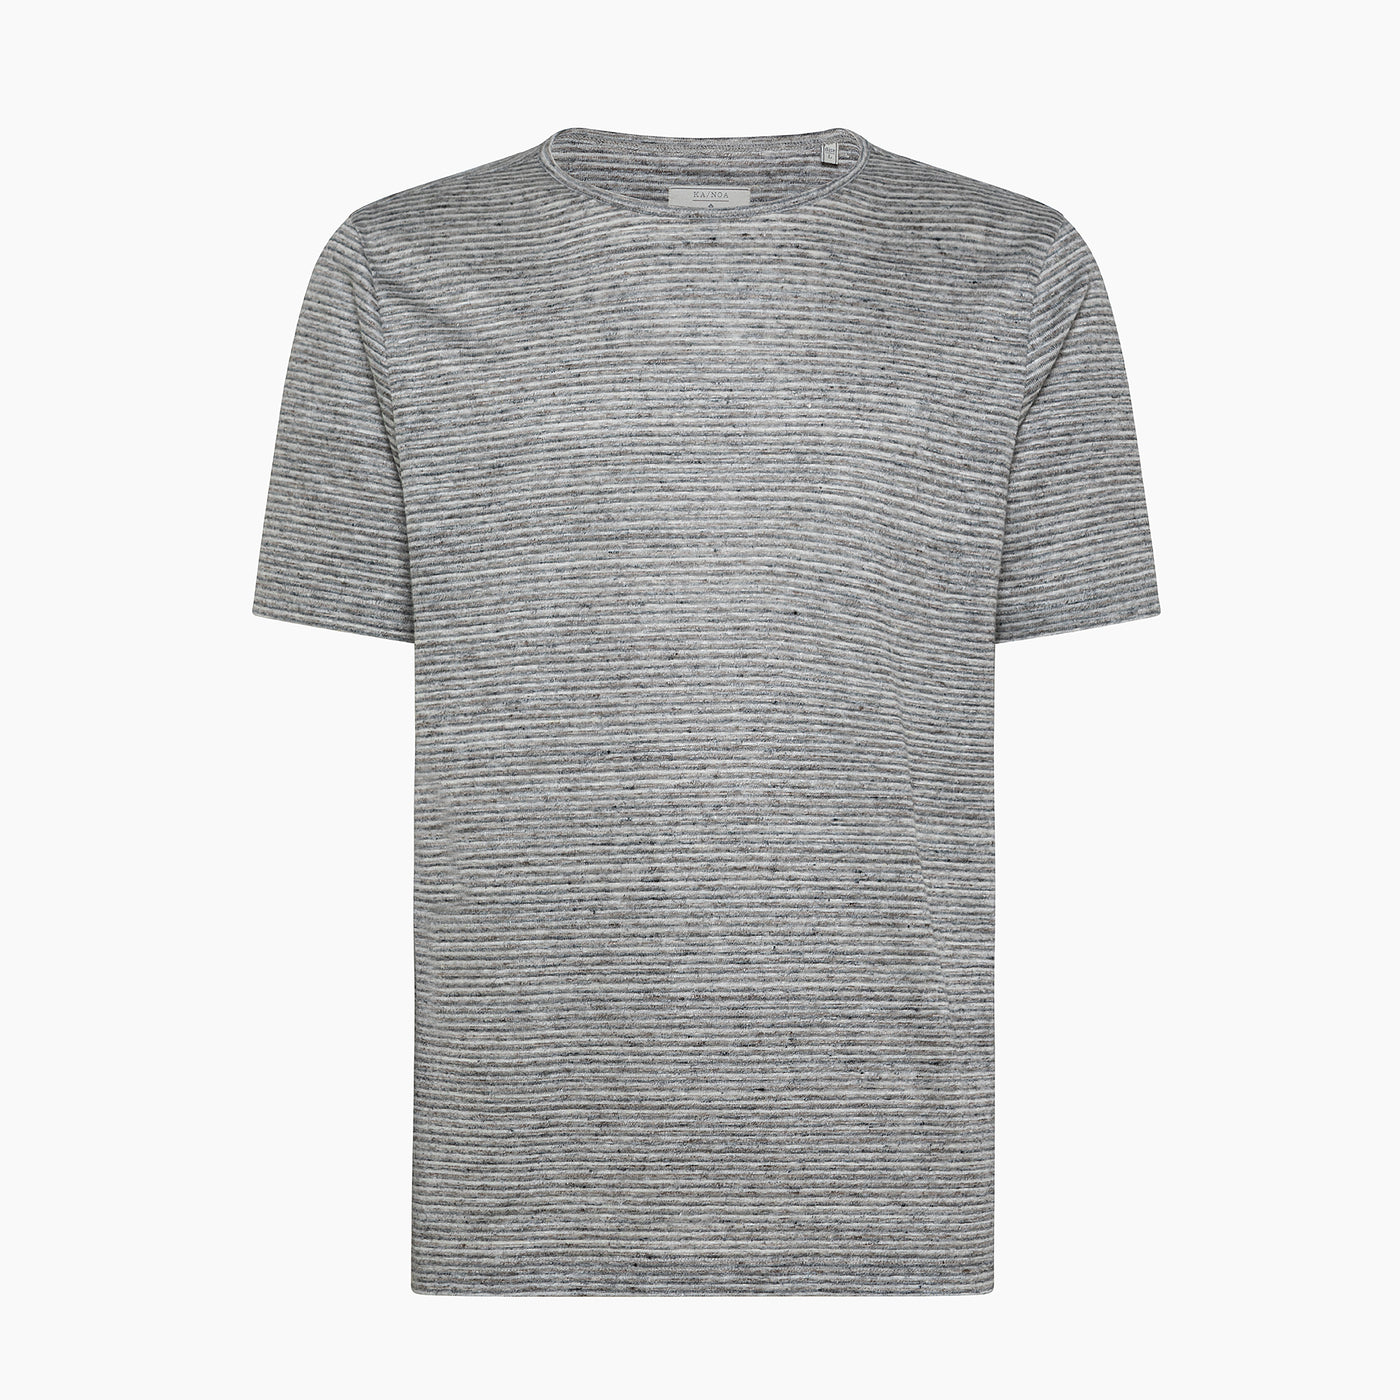 Smile stripe pattern short-sleeved t-shirt in linen